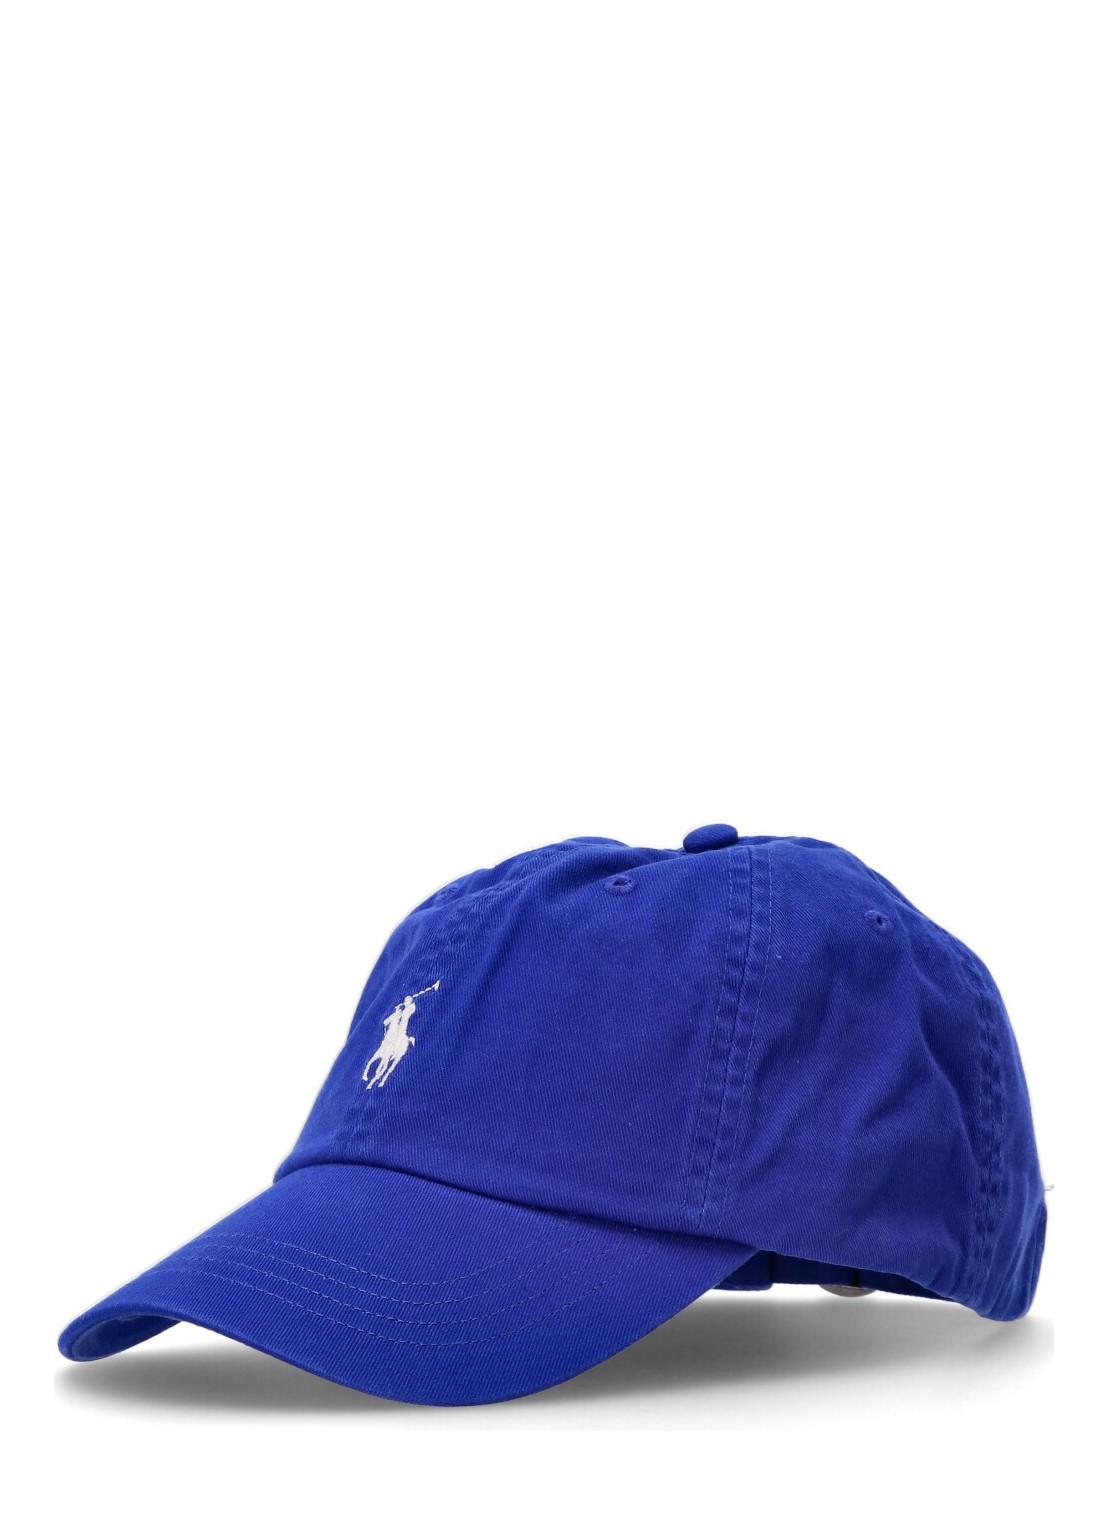 Gorras polo ralph lauren cap man cls sprt cap-hat 710667709117 sapphire star talla Azul
 